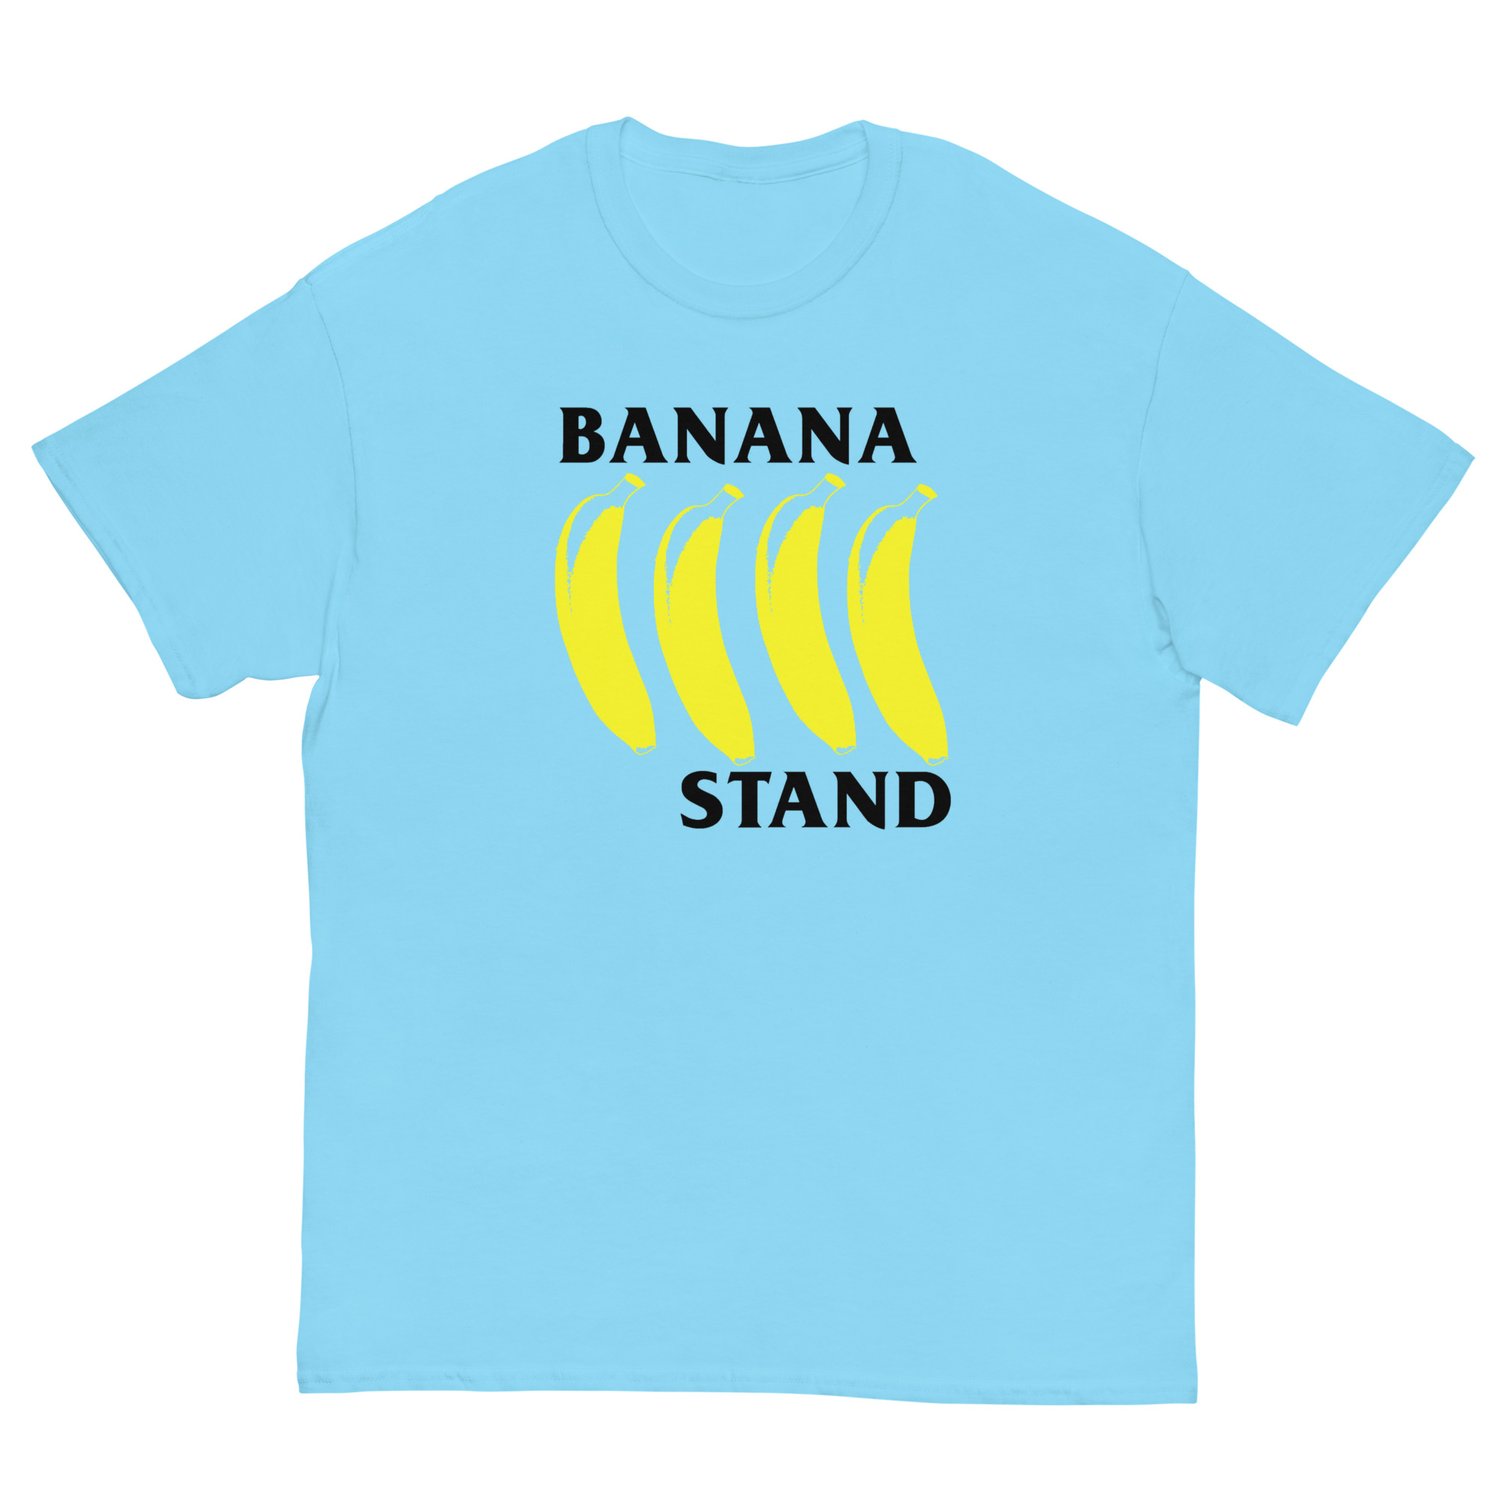 Image of Banana Stand tee